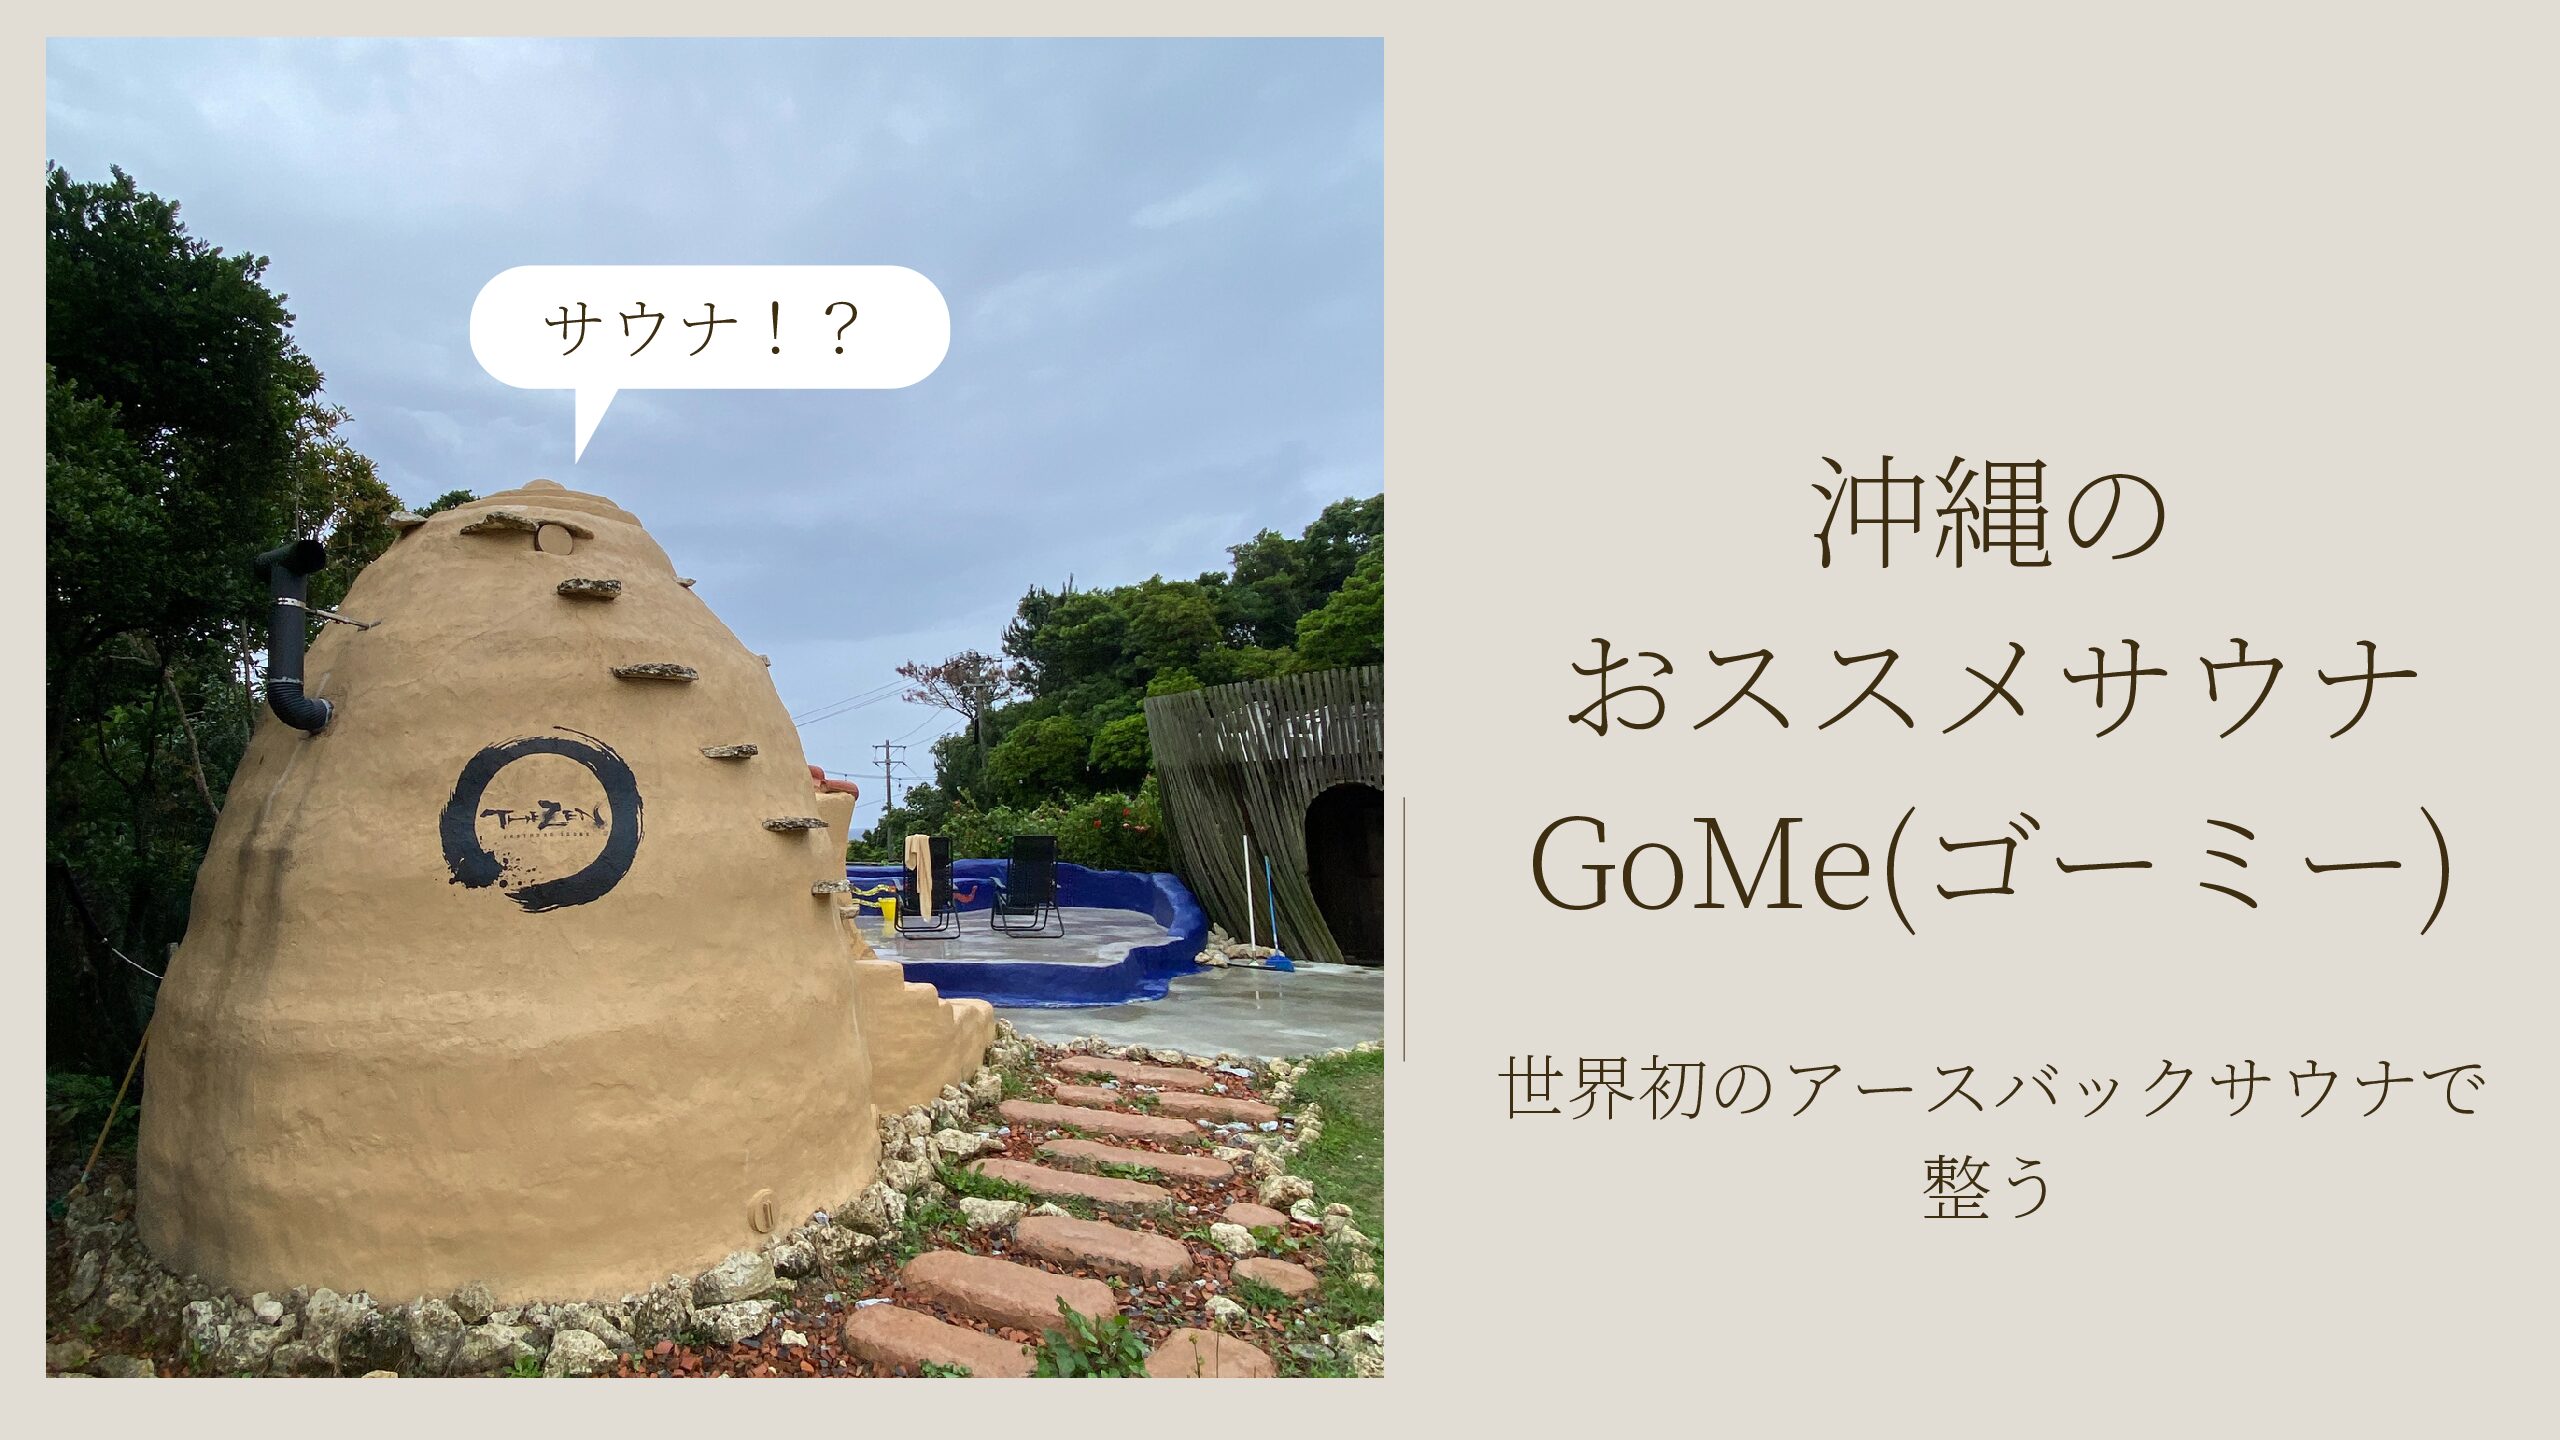 沖縄のおススメサウナGoMe(ゴーミー)～世界初のアースバックサウナで整う。